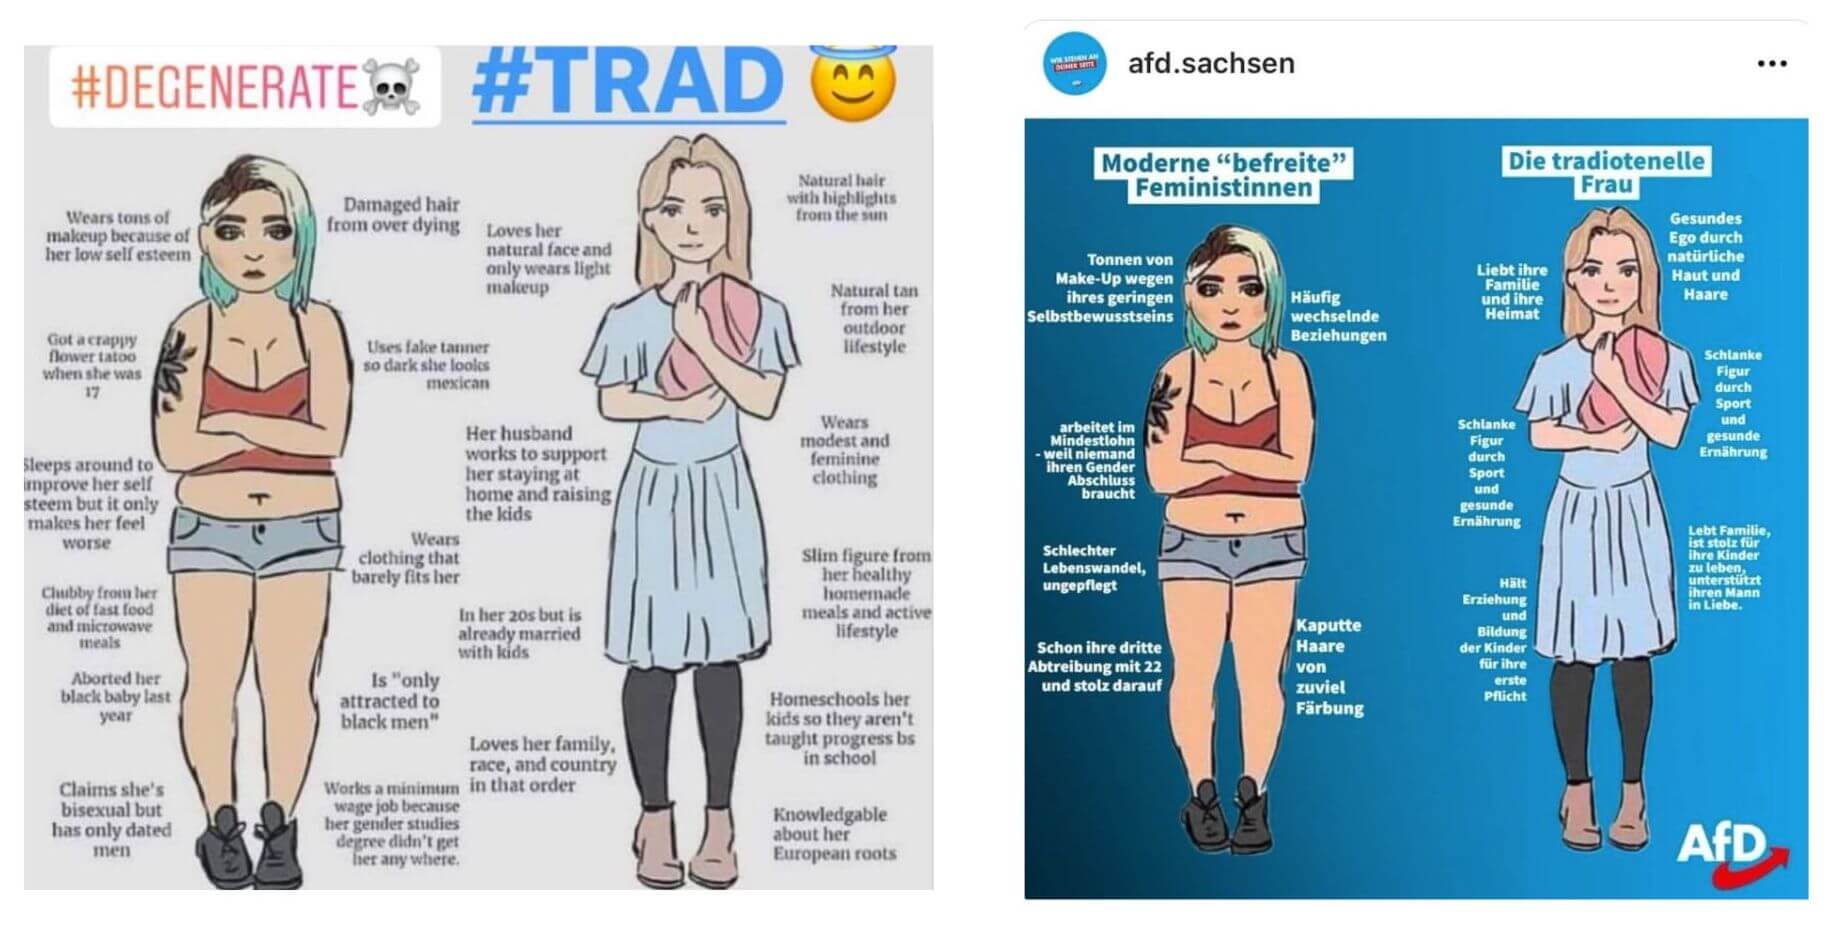 Das Bild kursierte bereits vor drei Jahren in Sozialen Netzwerken (links) und ähnelt dem Bild, das die AfD Sachsen (rechts) auf Instagram veröffentlichte